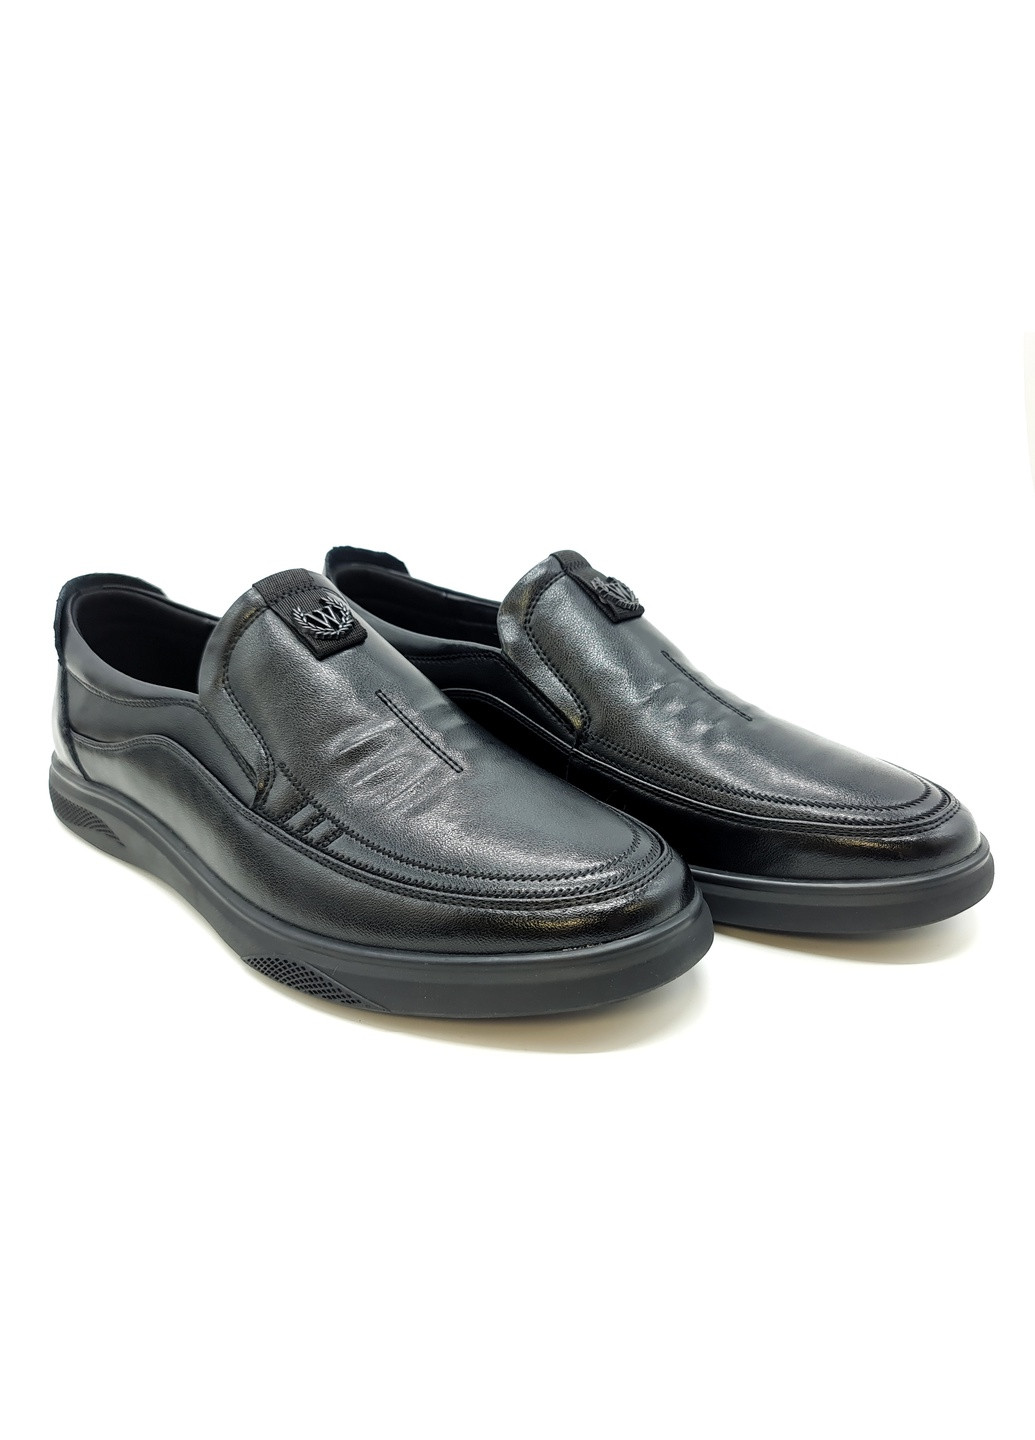 Черные мужские туфли черные кожаные ya-17-1 28,5 см (р) Yalasou